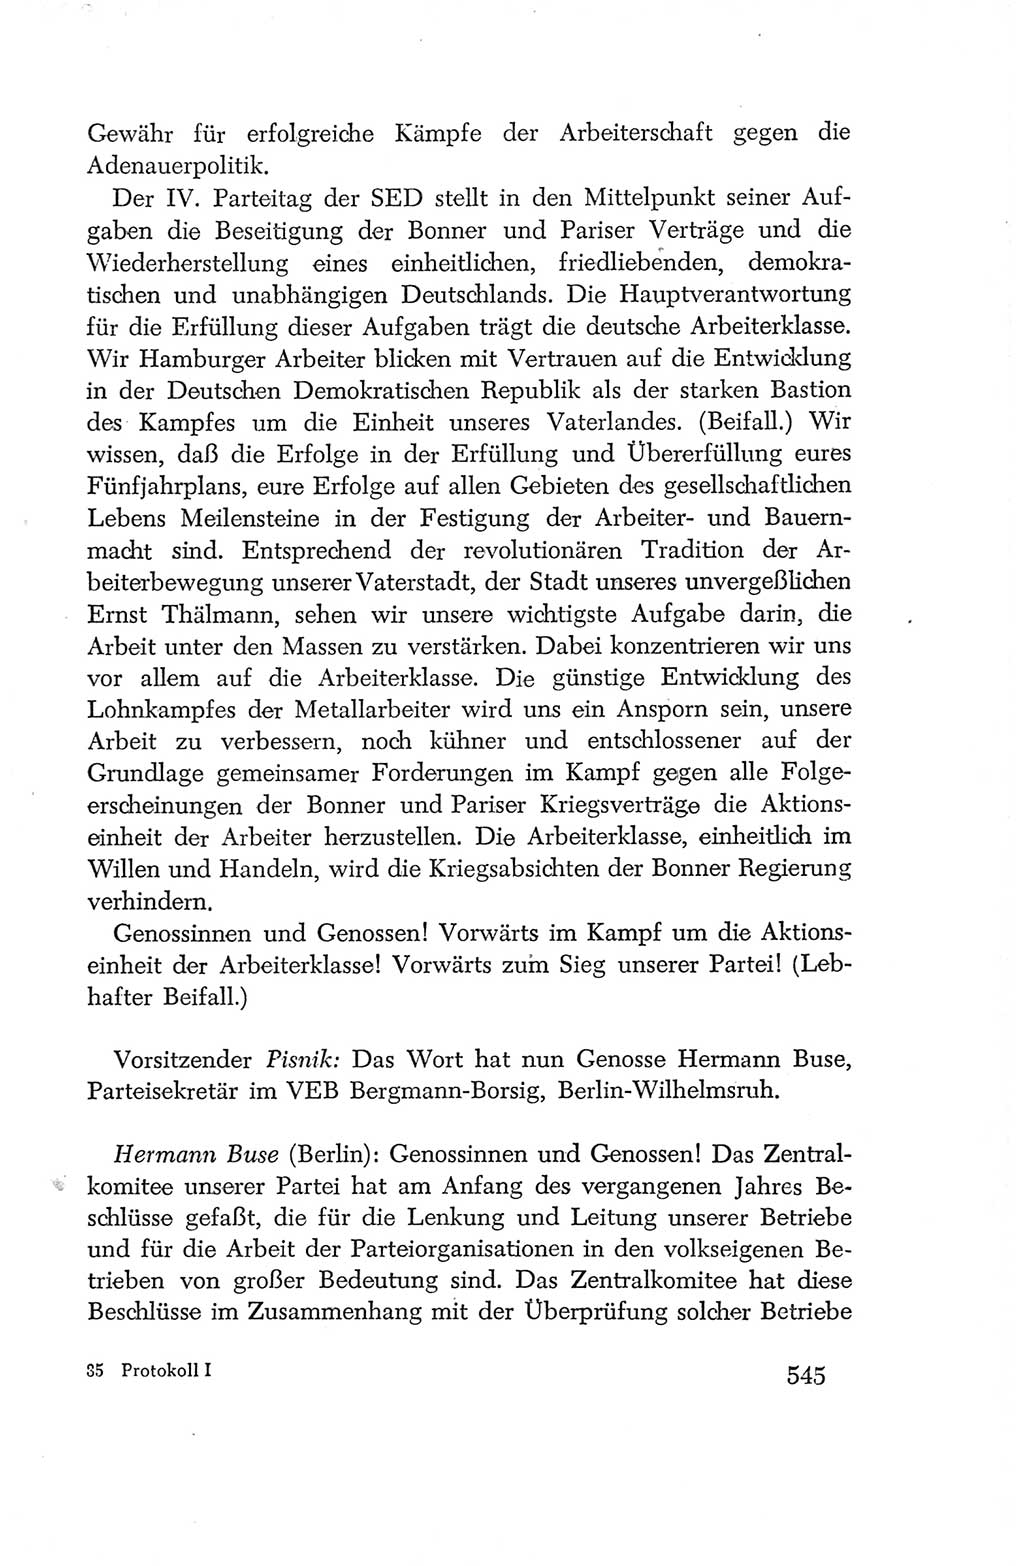 Protokoll der Verhandlungen des Ⅳ. Parteitages der Sozialistischen Einheitspartei Deutschlands (SED) [Deutsche Demokratische Republik (DDR)] 1954, Seite 545